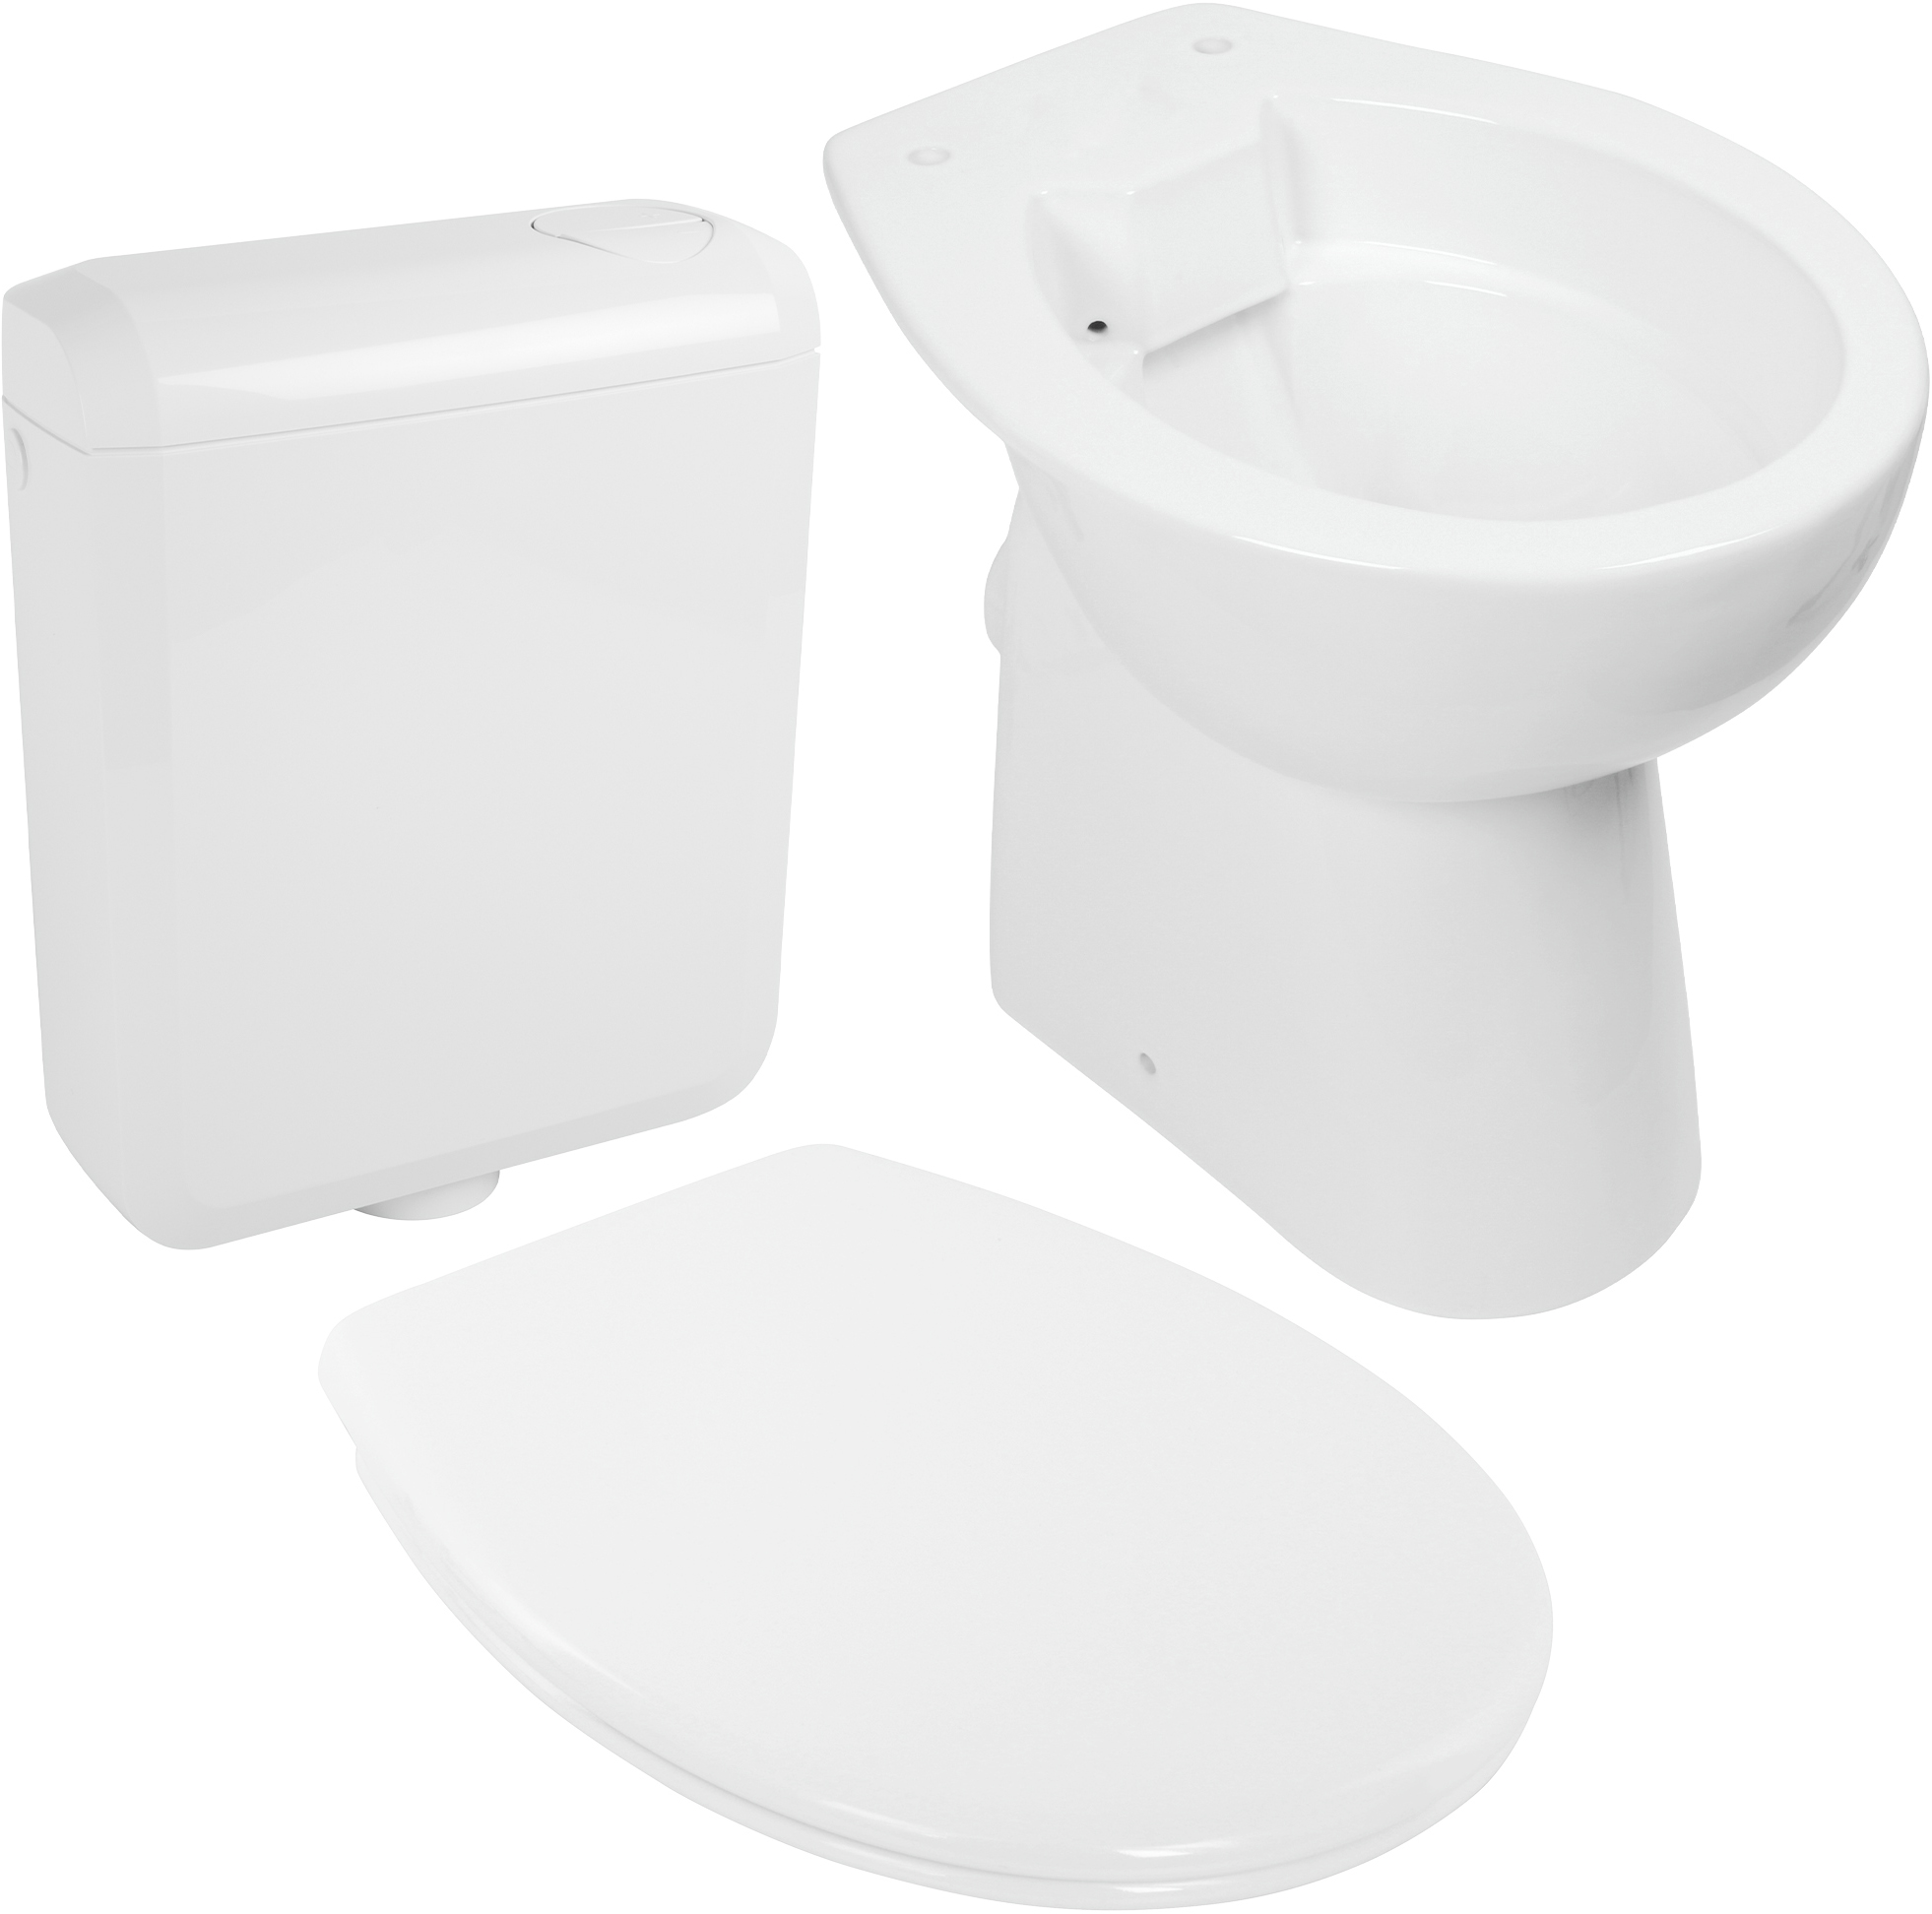 Komplett-Set spülrandloses Stand-WC, +7 cm erhöht, mit WC-Sitz und Spülkasten